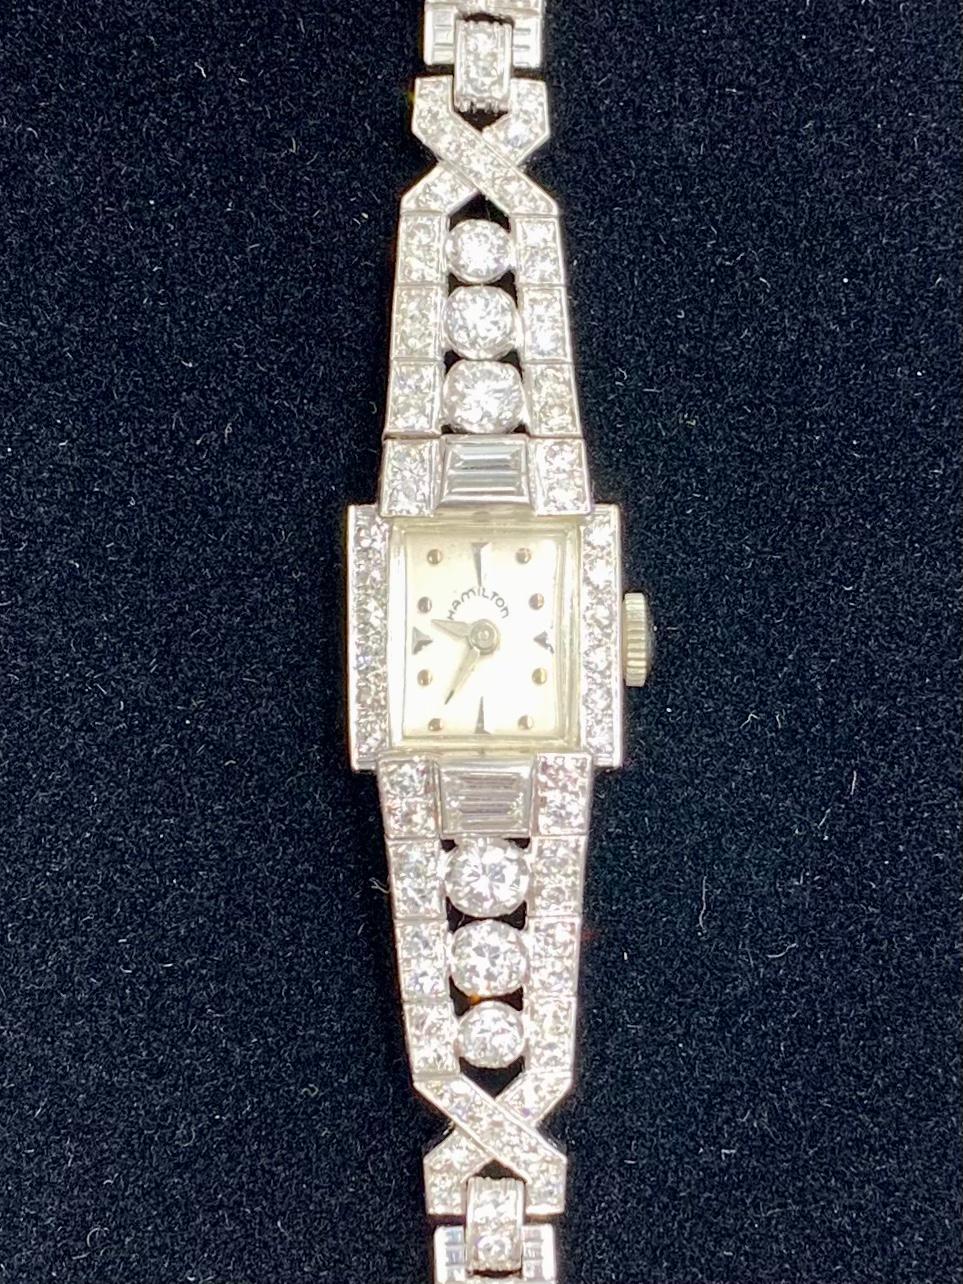 Elegante Hamilton Platin-Diamantenuhr aus der Zeit des Art déco mit 4,8 TCW und einem breiten doppelreihigen Platin- und Diamantarmband, stilvollen X-förmigen Diamantendetails und beträchtlichen Baguette- und Rundschliff-Diamantenakzenten.
Seit fast